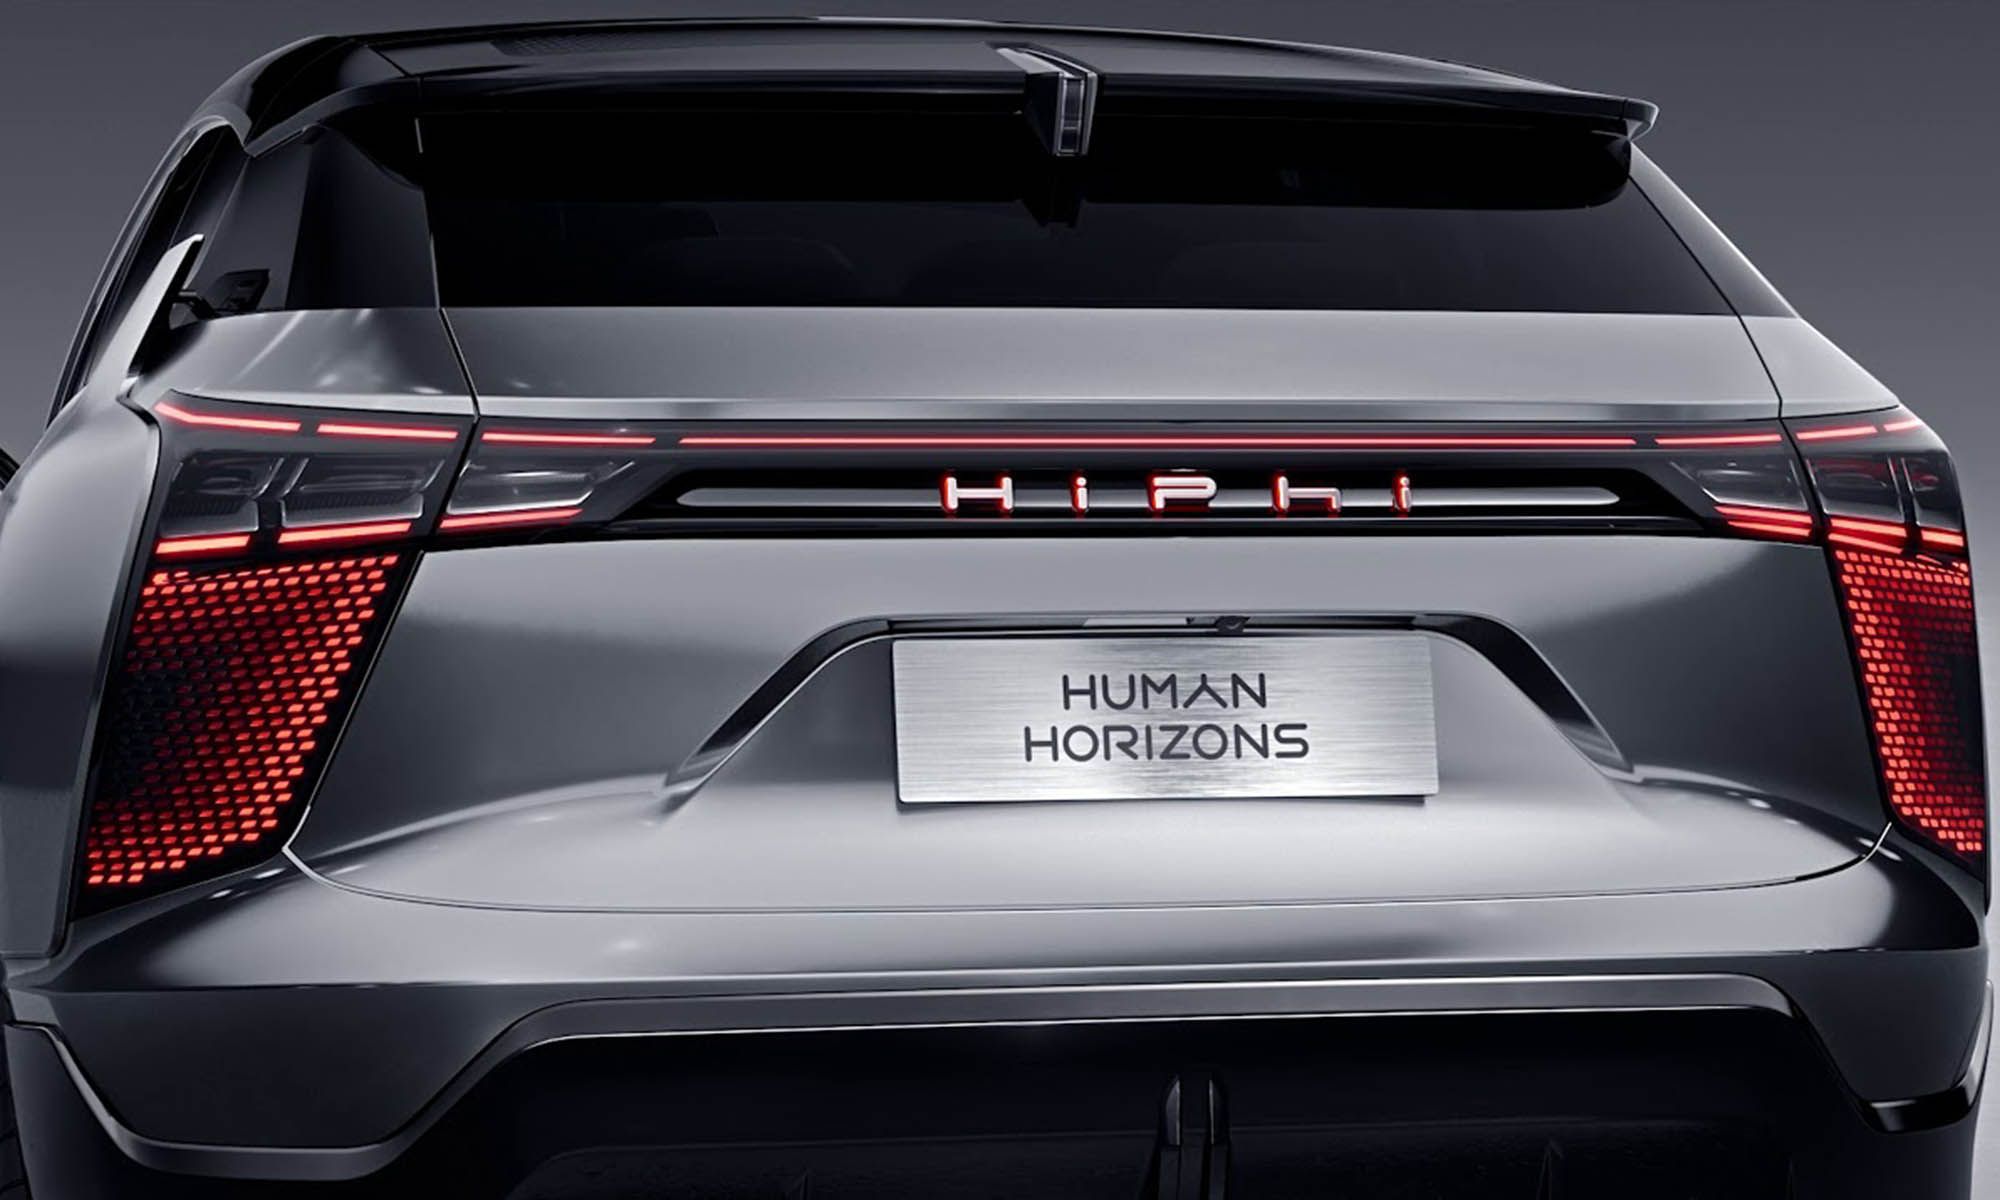 El nuevo modelo eléctrico destinado al mercado europeo se distinguirá de los dos vehículos que ya vende HiPhi en China.